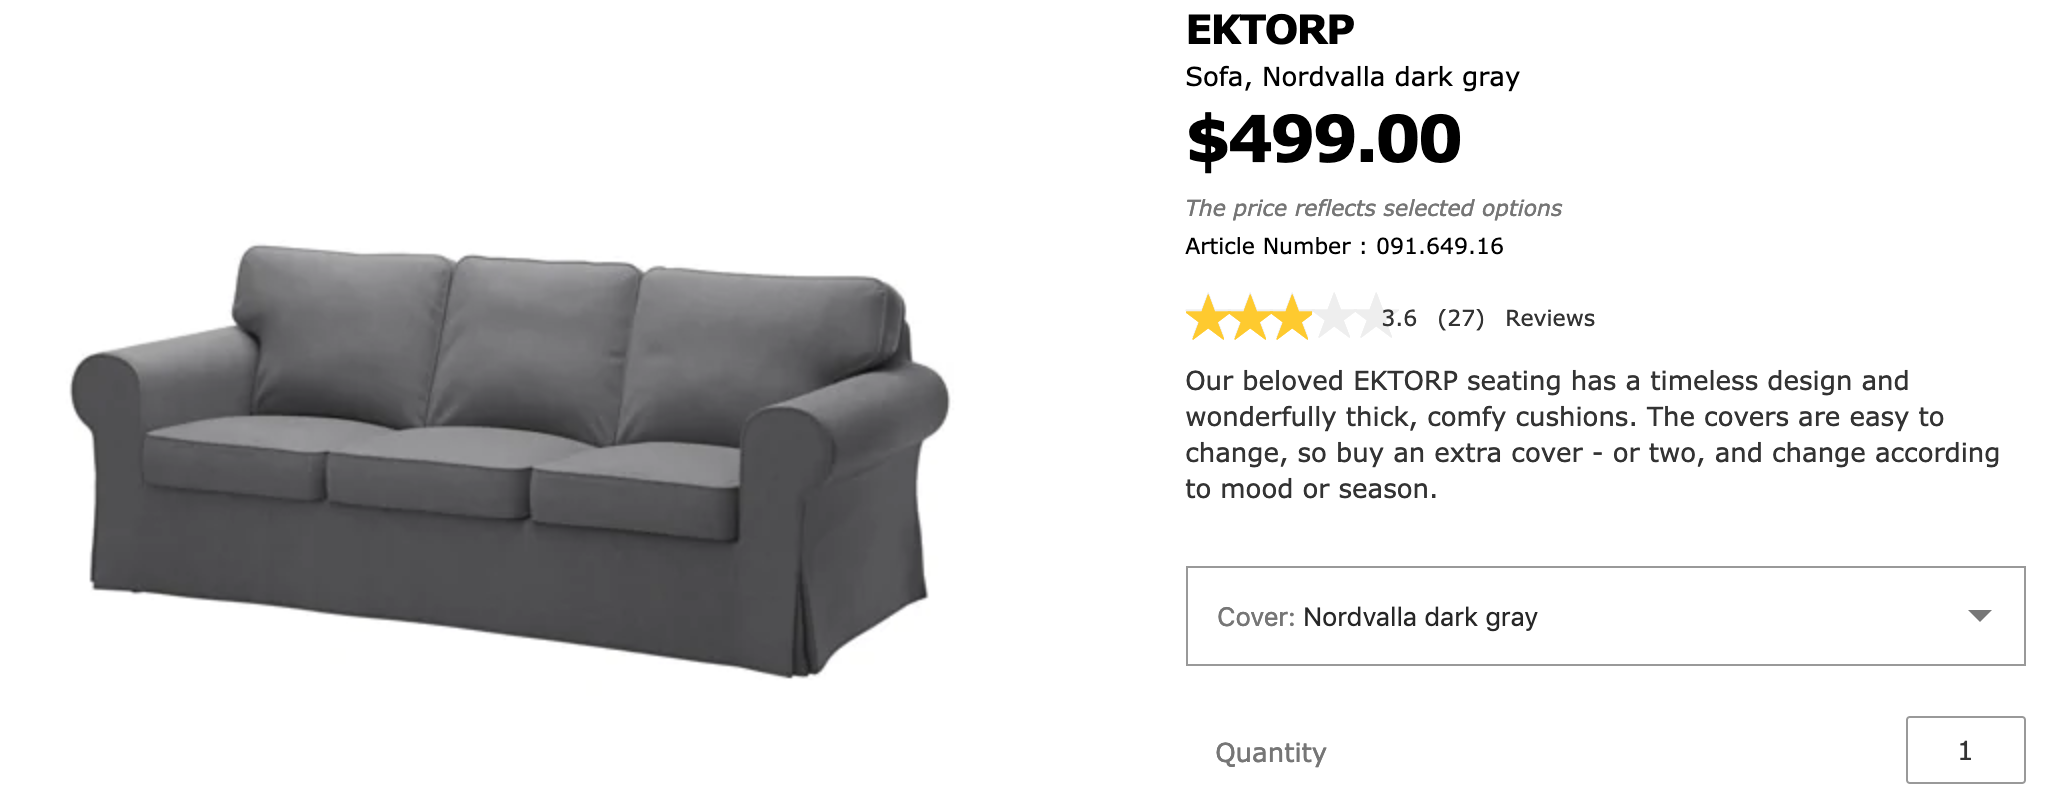 IKEA's Ektorp sofa in dark gray, $499